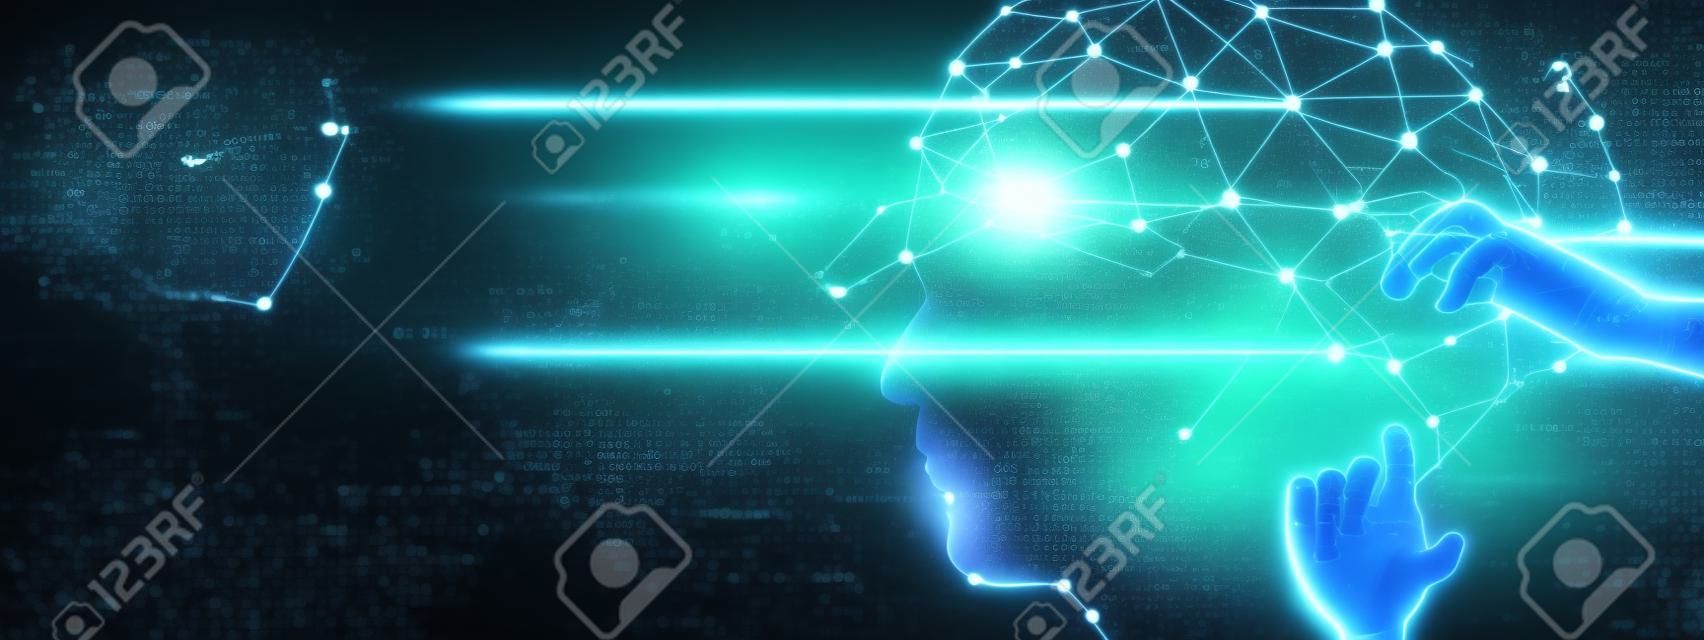 Nauczanie maszynowe. Ręka robota dotykająca danych binarnych. Futurystyczna sztuczna inteligencja (AI). Głęboka nauka. Reprezentowanie mózgu. Algorytm i innowacyjność. Sieć neuronowa. Wizualizacja dużych zbiorów danych.